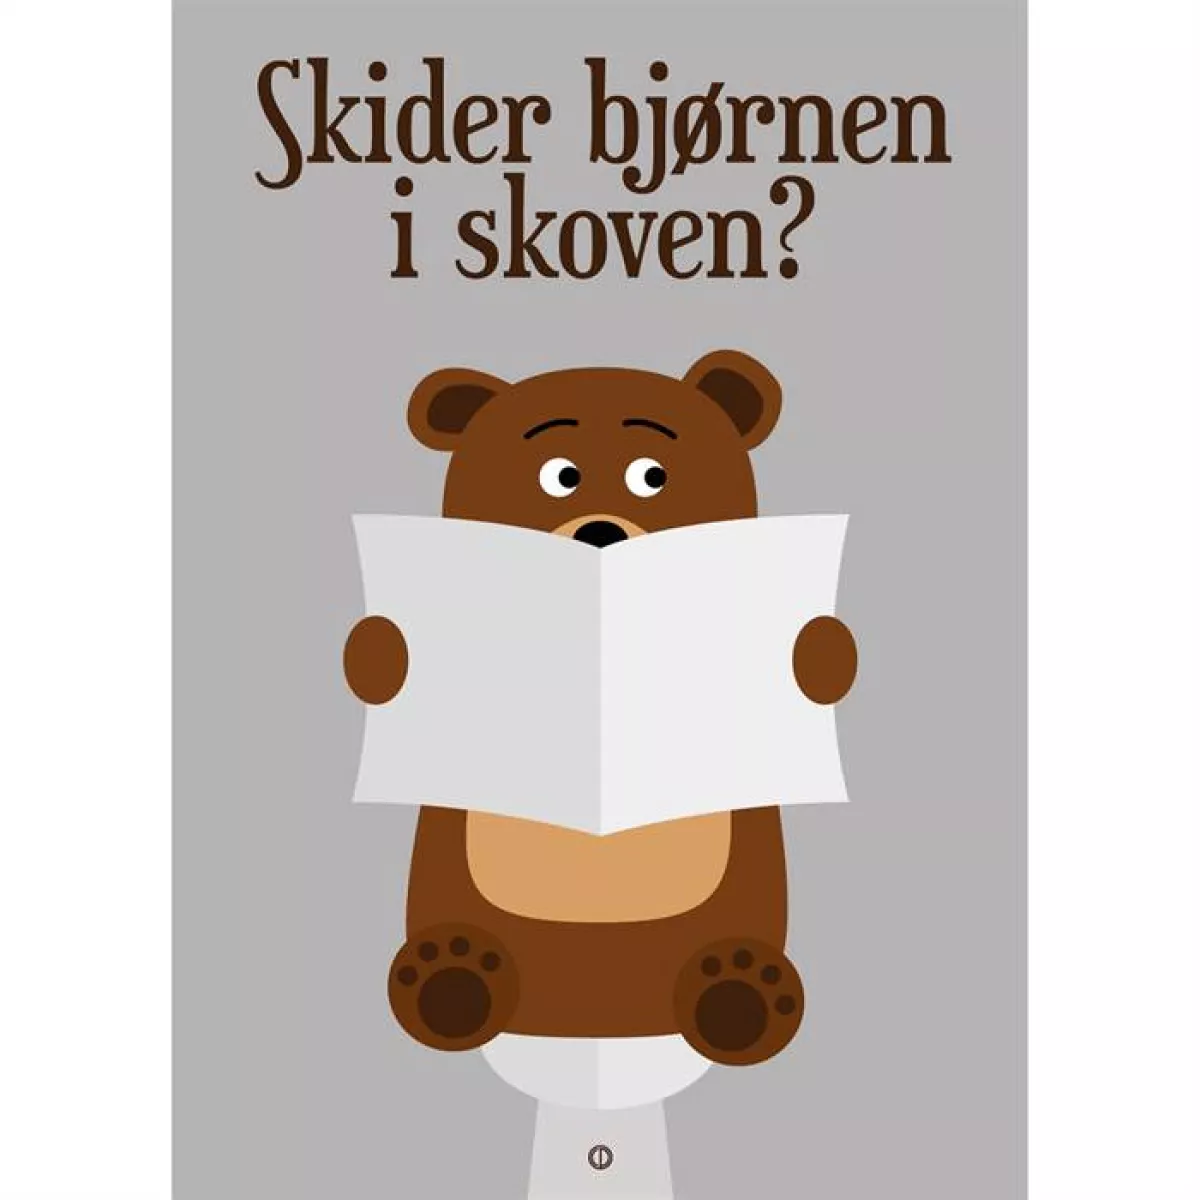 #1 - Citatplakat "Skider bjørnen i skoven?" plakat - 50x70cm